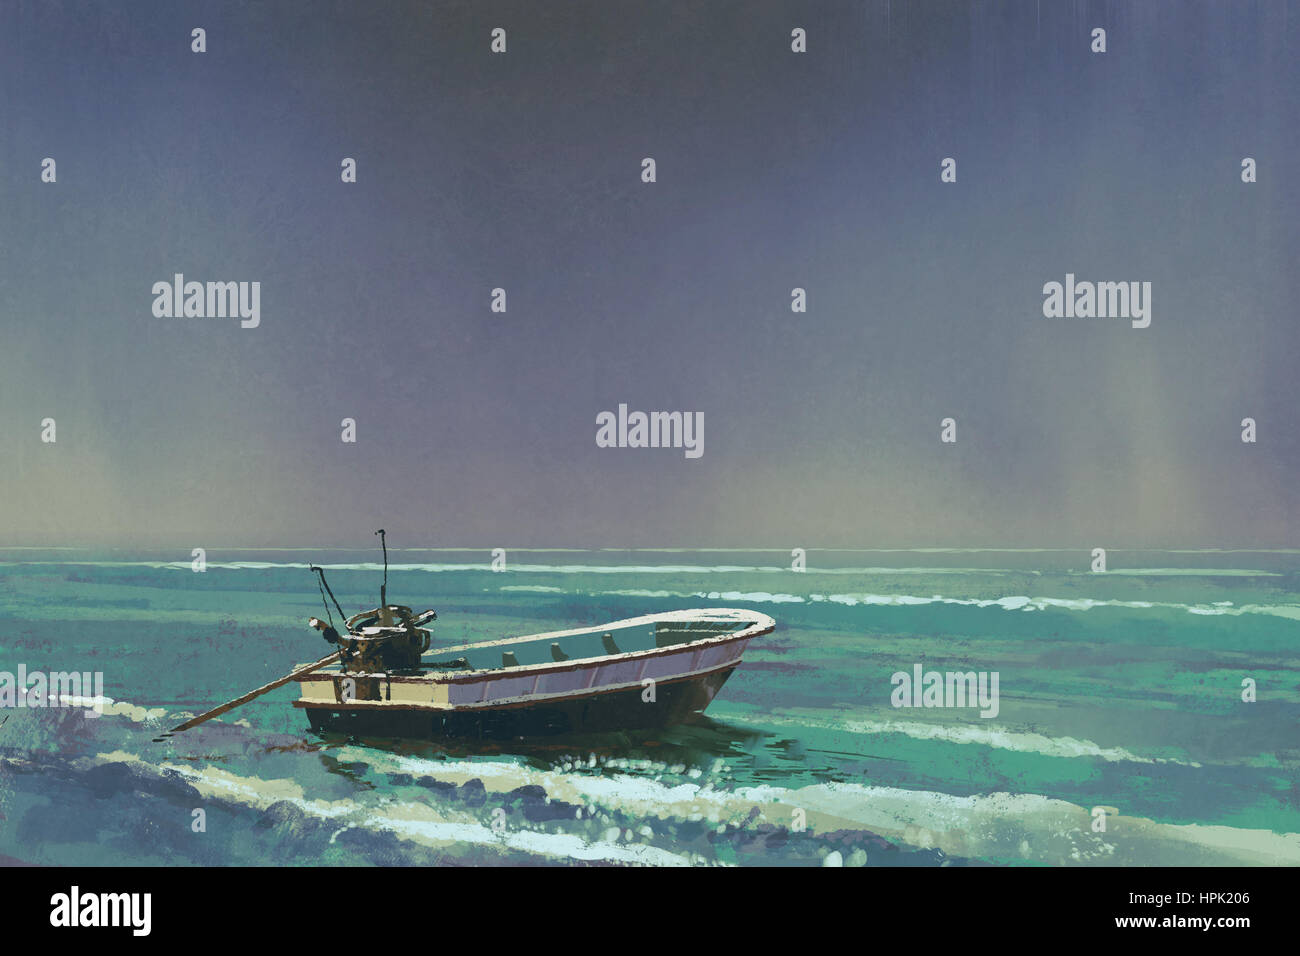 La barca sul mare con cielo grigio su sfondo,illustrazione pittura Foto Stock